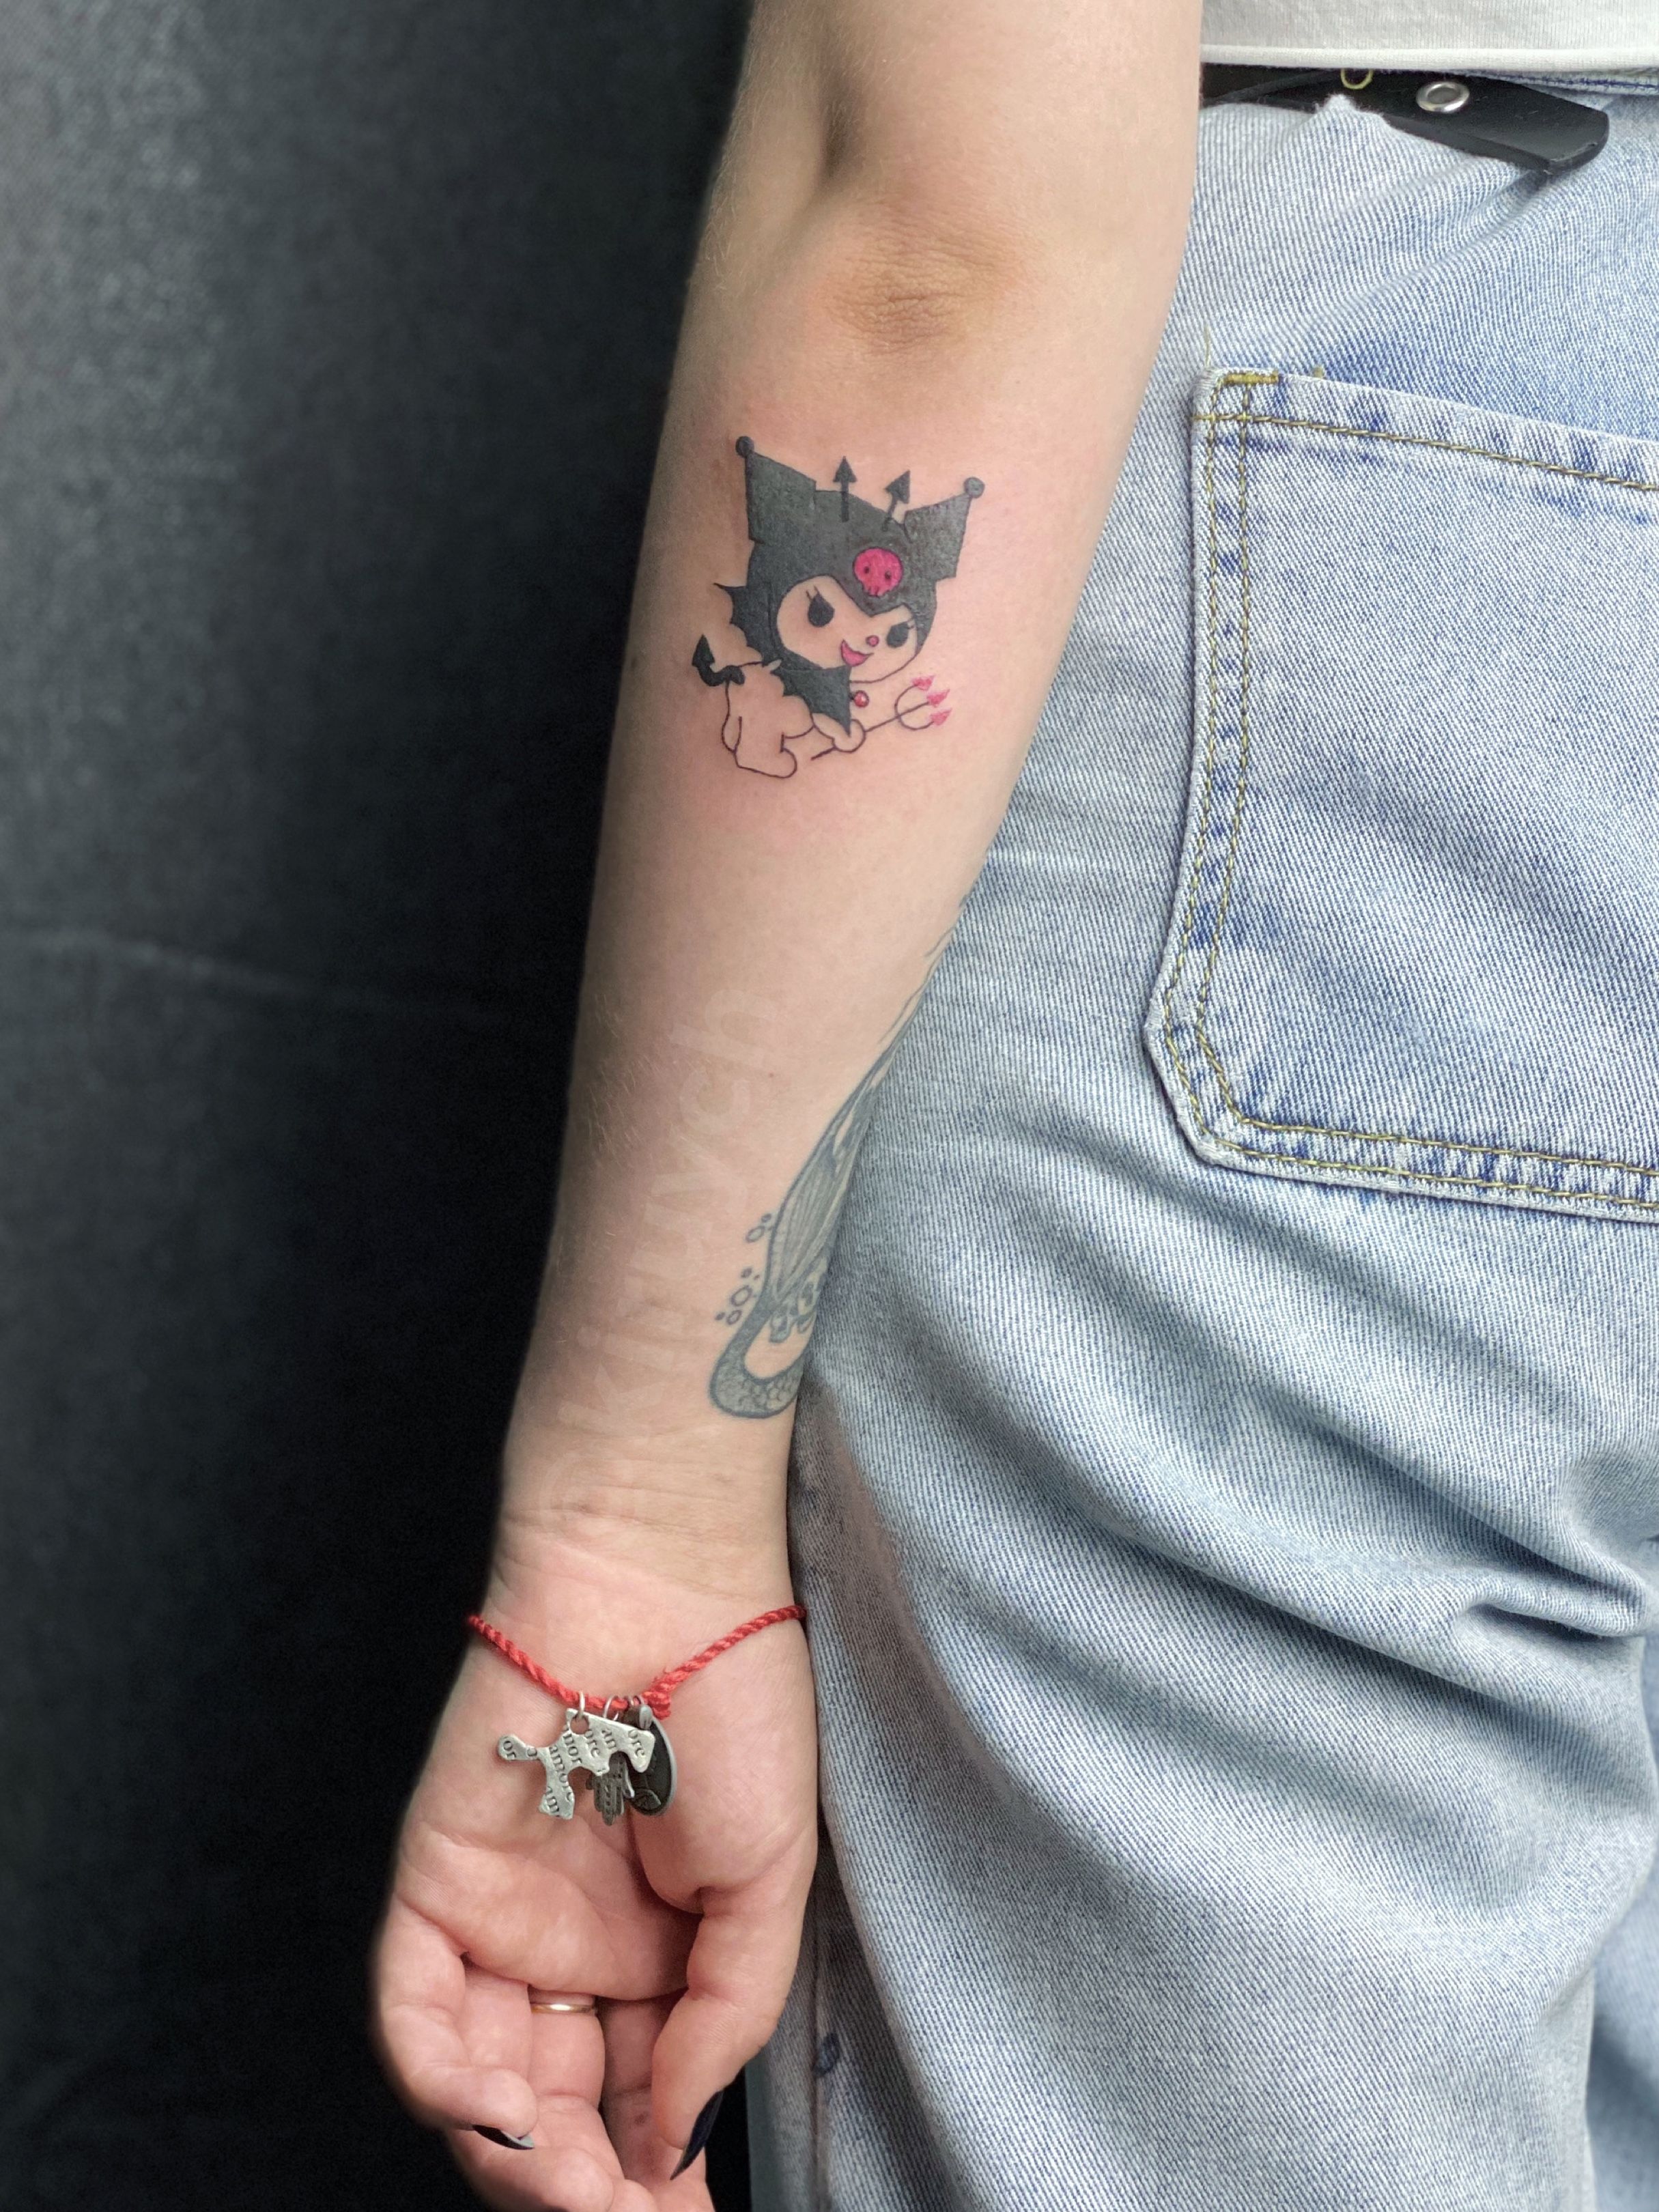 Kuromi  My Melody cherries     tattoo tattoos ink inked art  tattooartist tattooart tattooed tattoolife tattooideas love   𝔏𝔞𝔶𝔩𝔞 𝔈𝔩𝔦𝔷𝔞𝔟𝔢𝔱𝔥 tatsbyshawty on Instagram